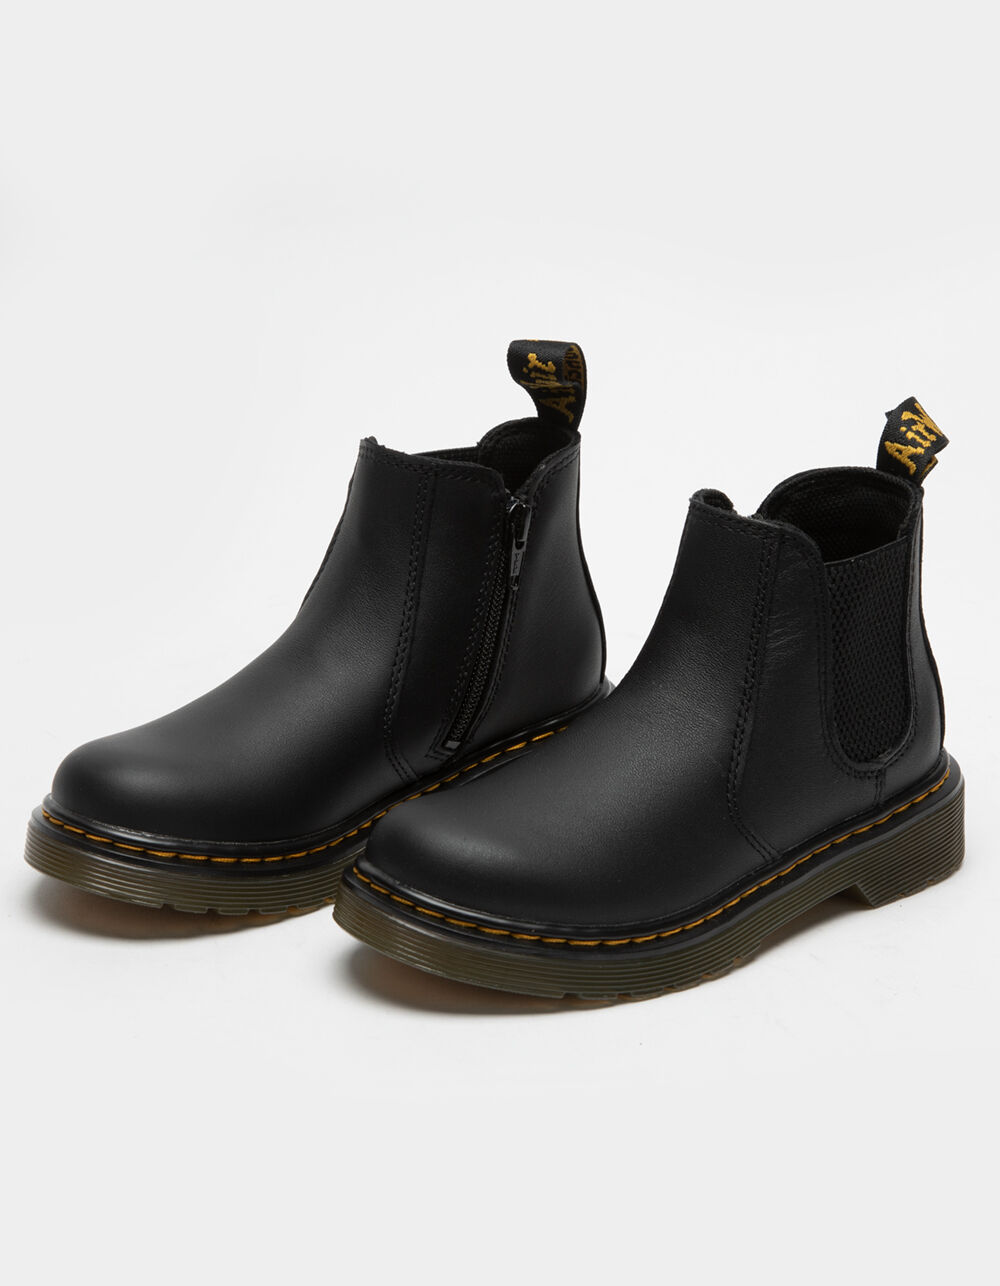 Mevrouw Geliefde Voorbijganger DR. MARTENS 2976 Kids Leather Boots - BLACK | Tillys